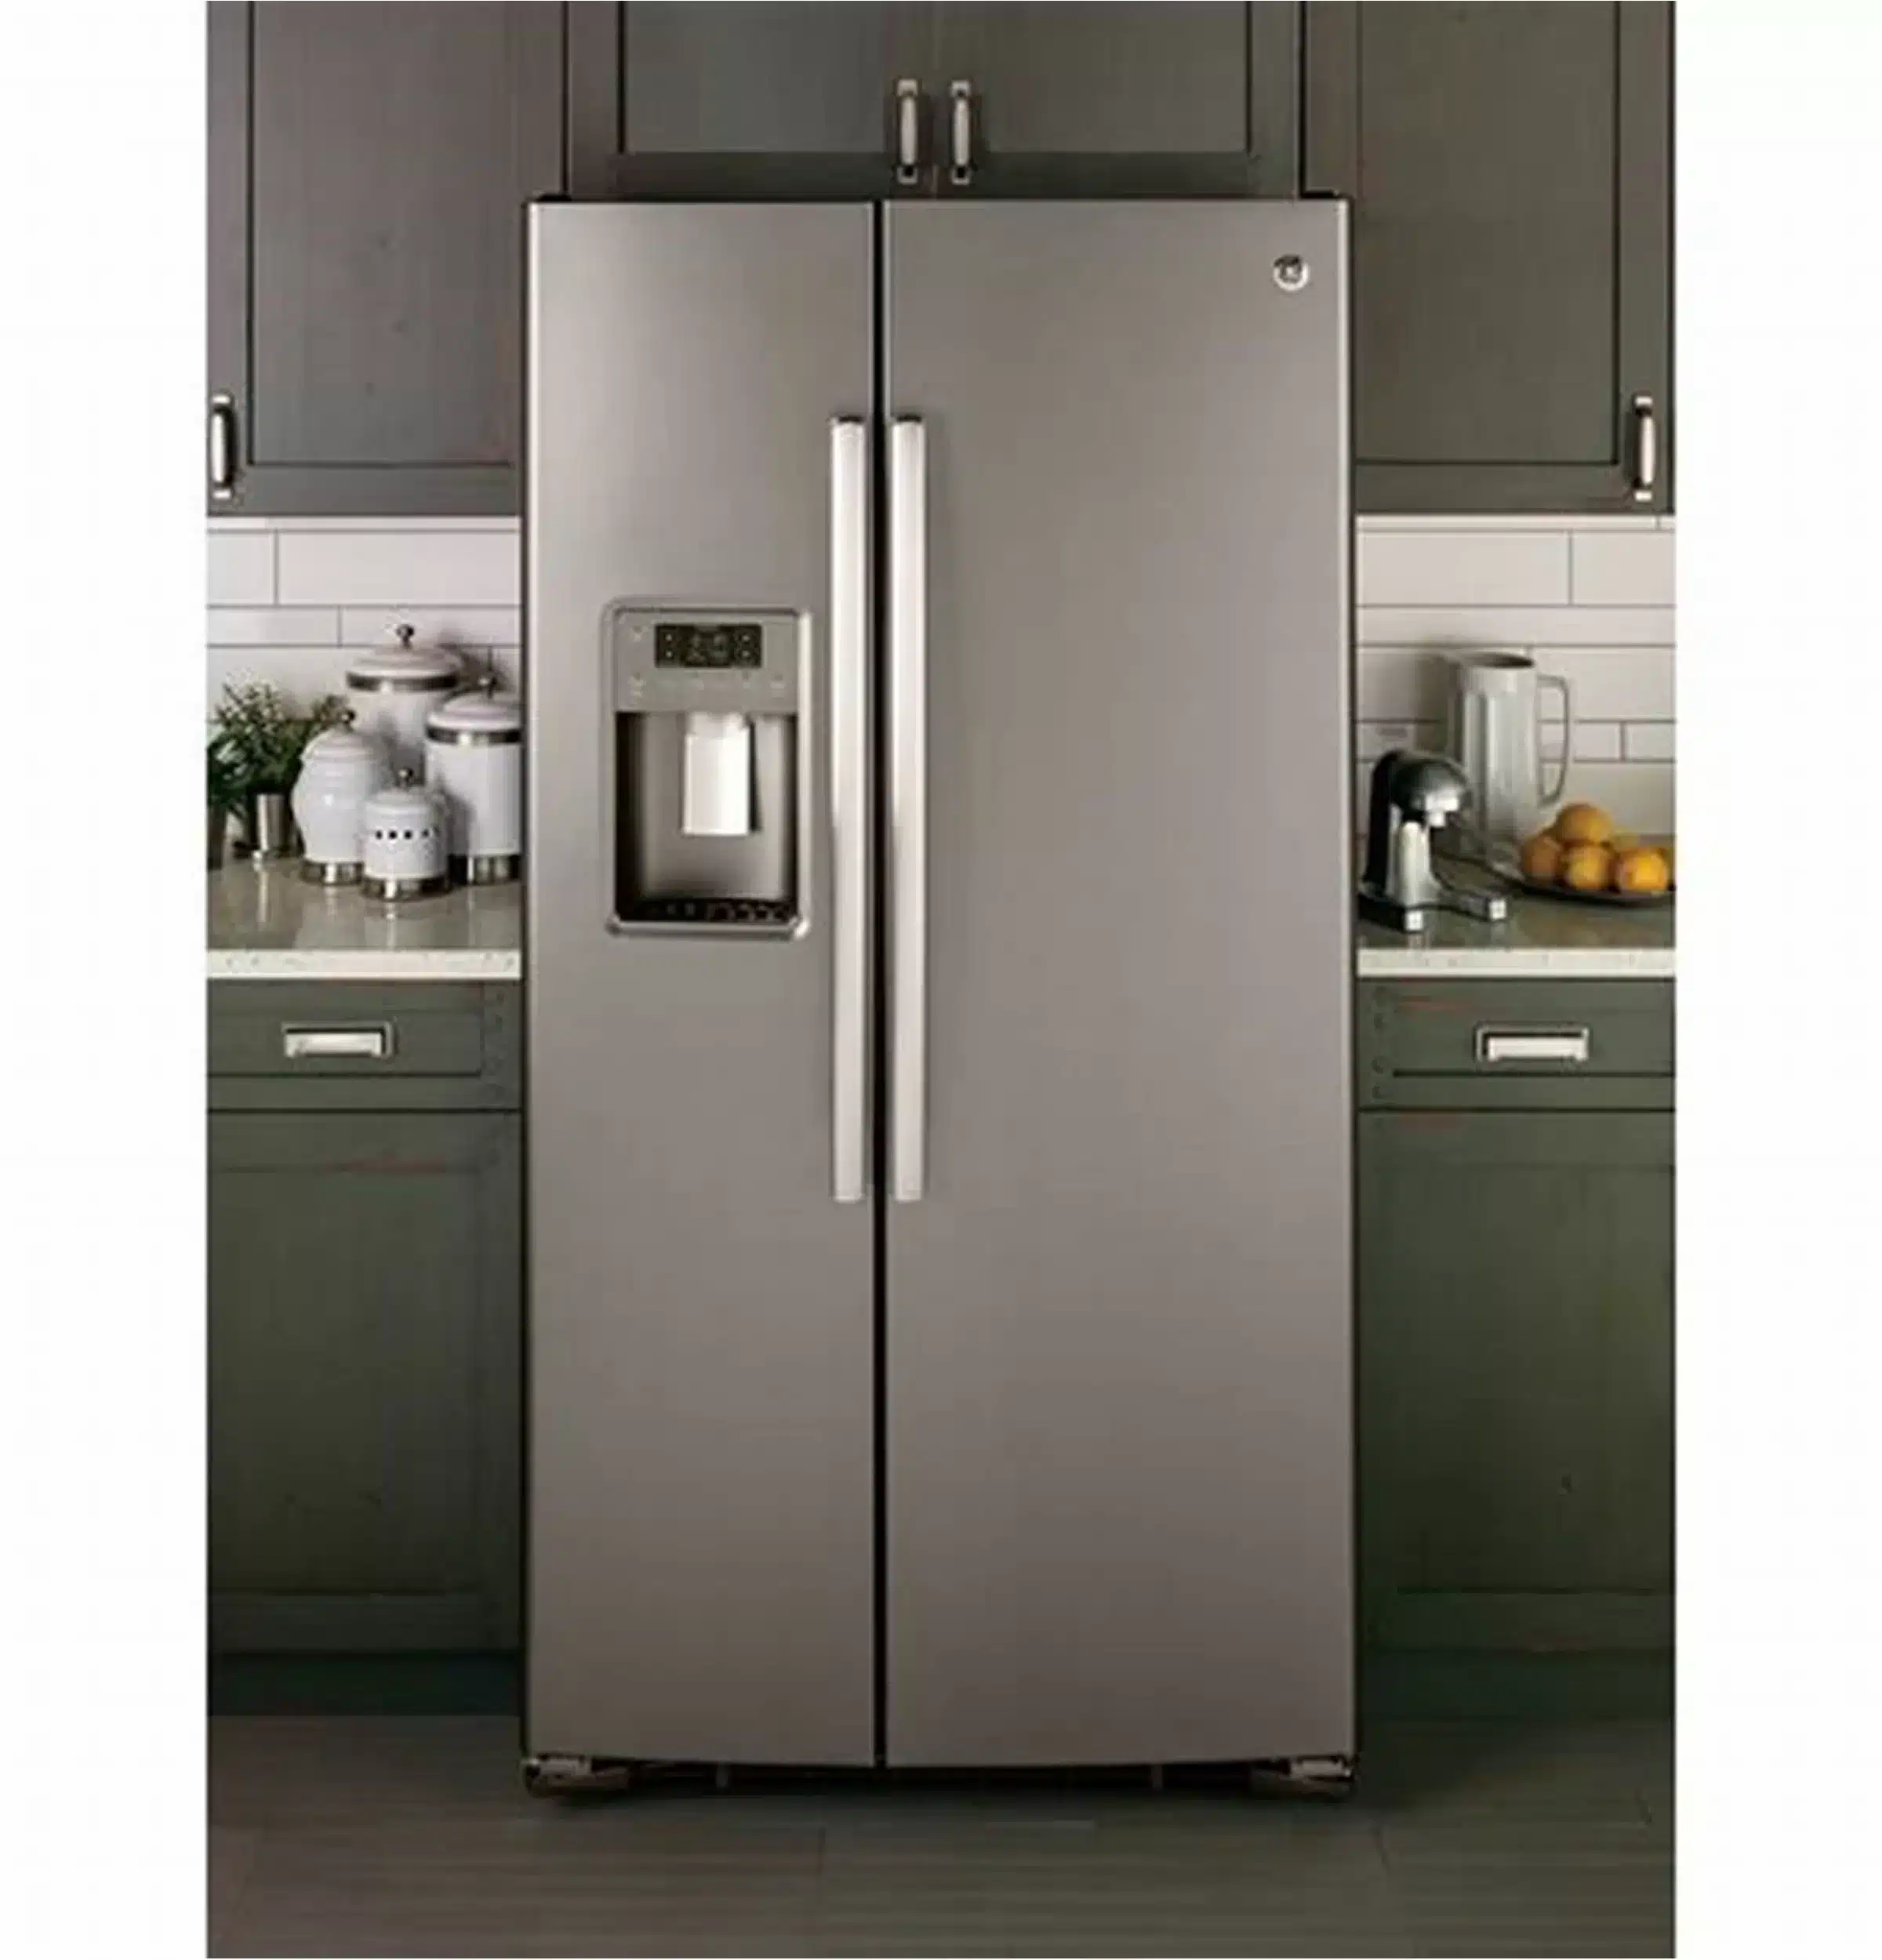 help-why-is-my-ge-fridge-not-dispensing-water